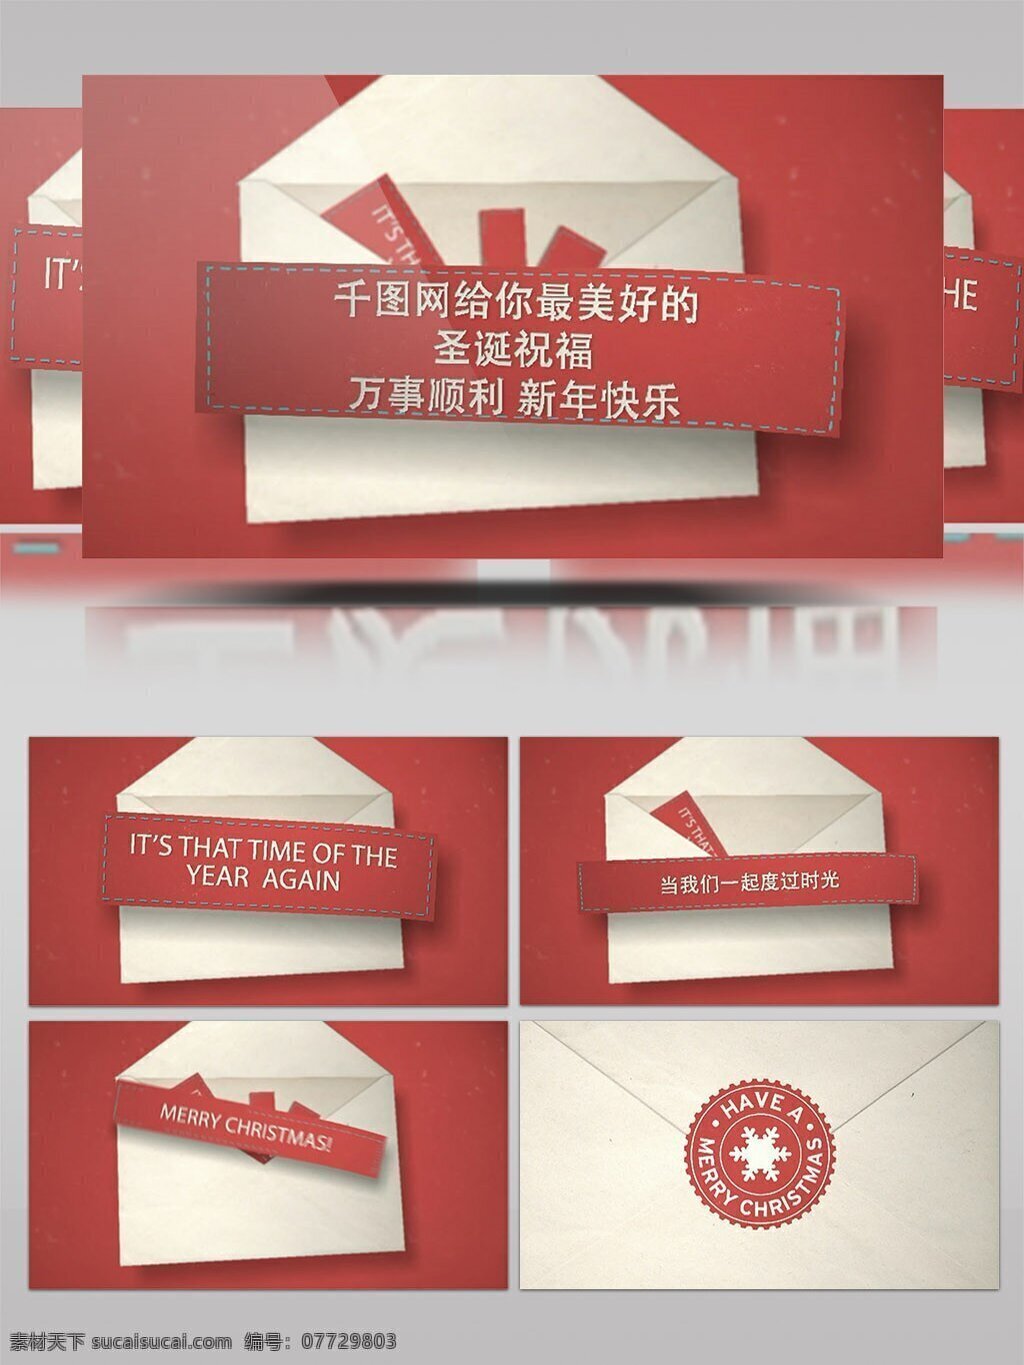 圣诞节 信封 纸条 祝福 展示 ae 模板 节日 开场 动画 新年 信件 文字